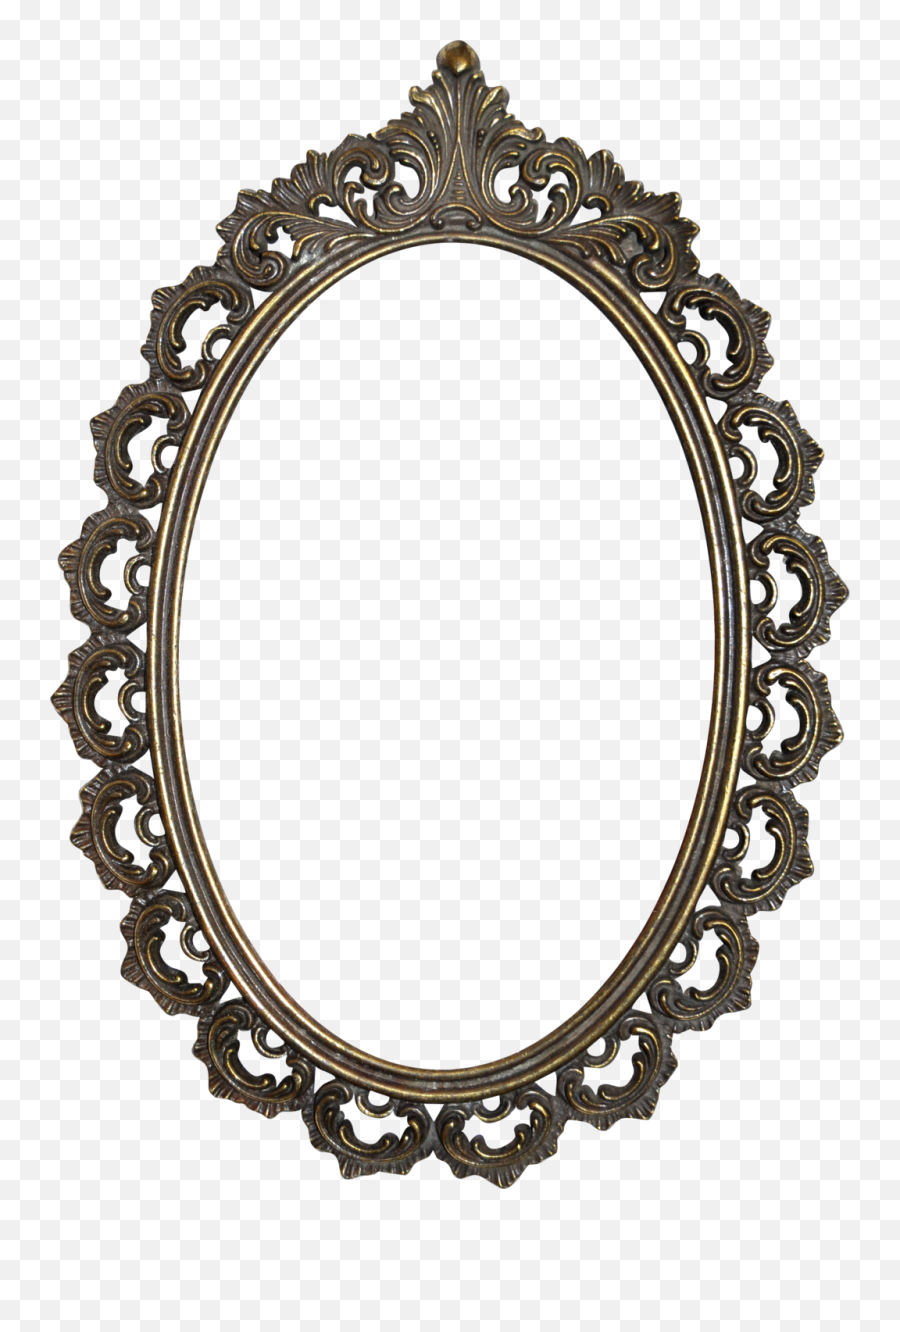 Download Golden Mirror Frame Png Image - Oval Mirror Frame Png,Oval Frame Png